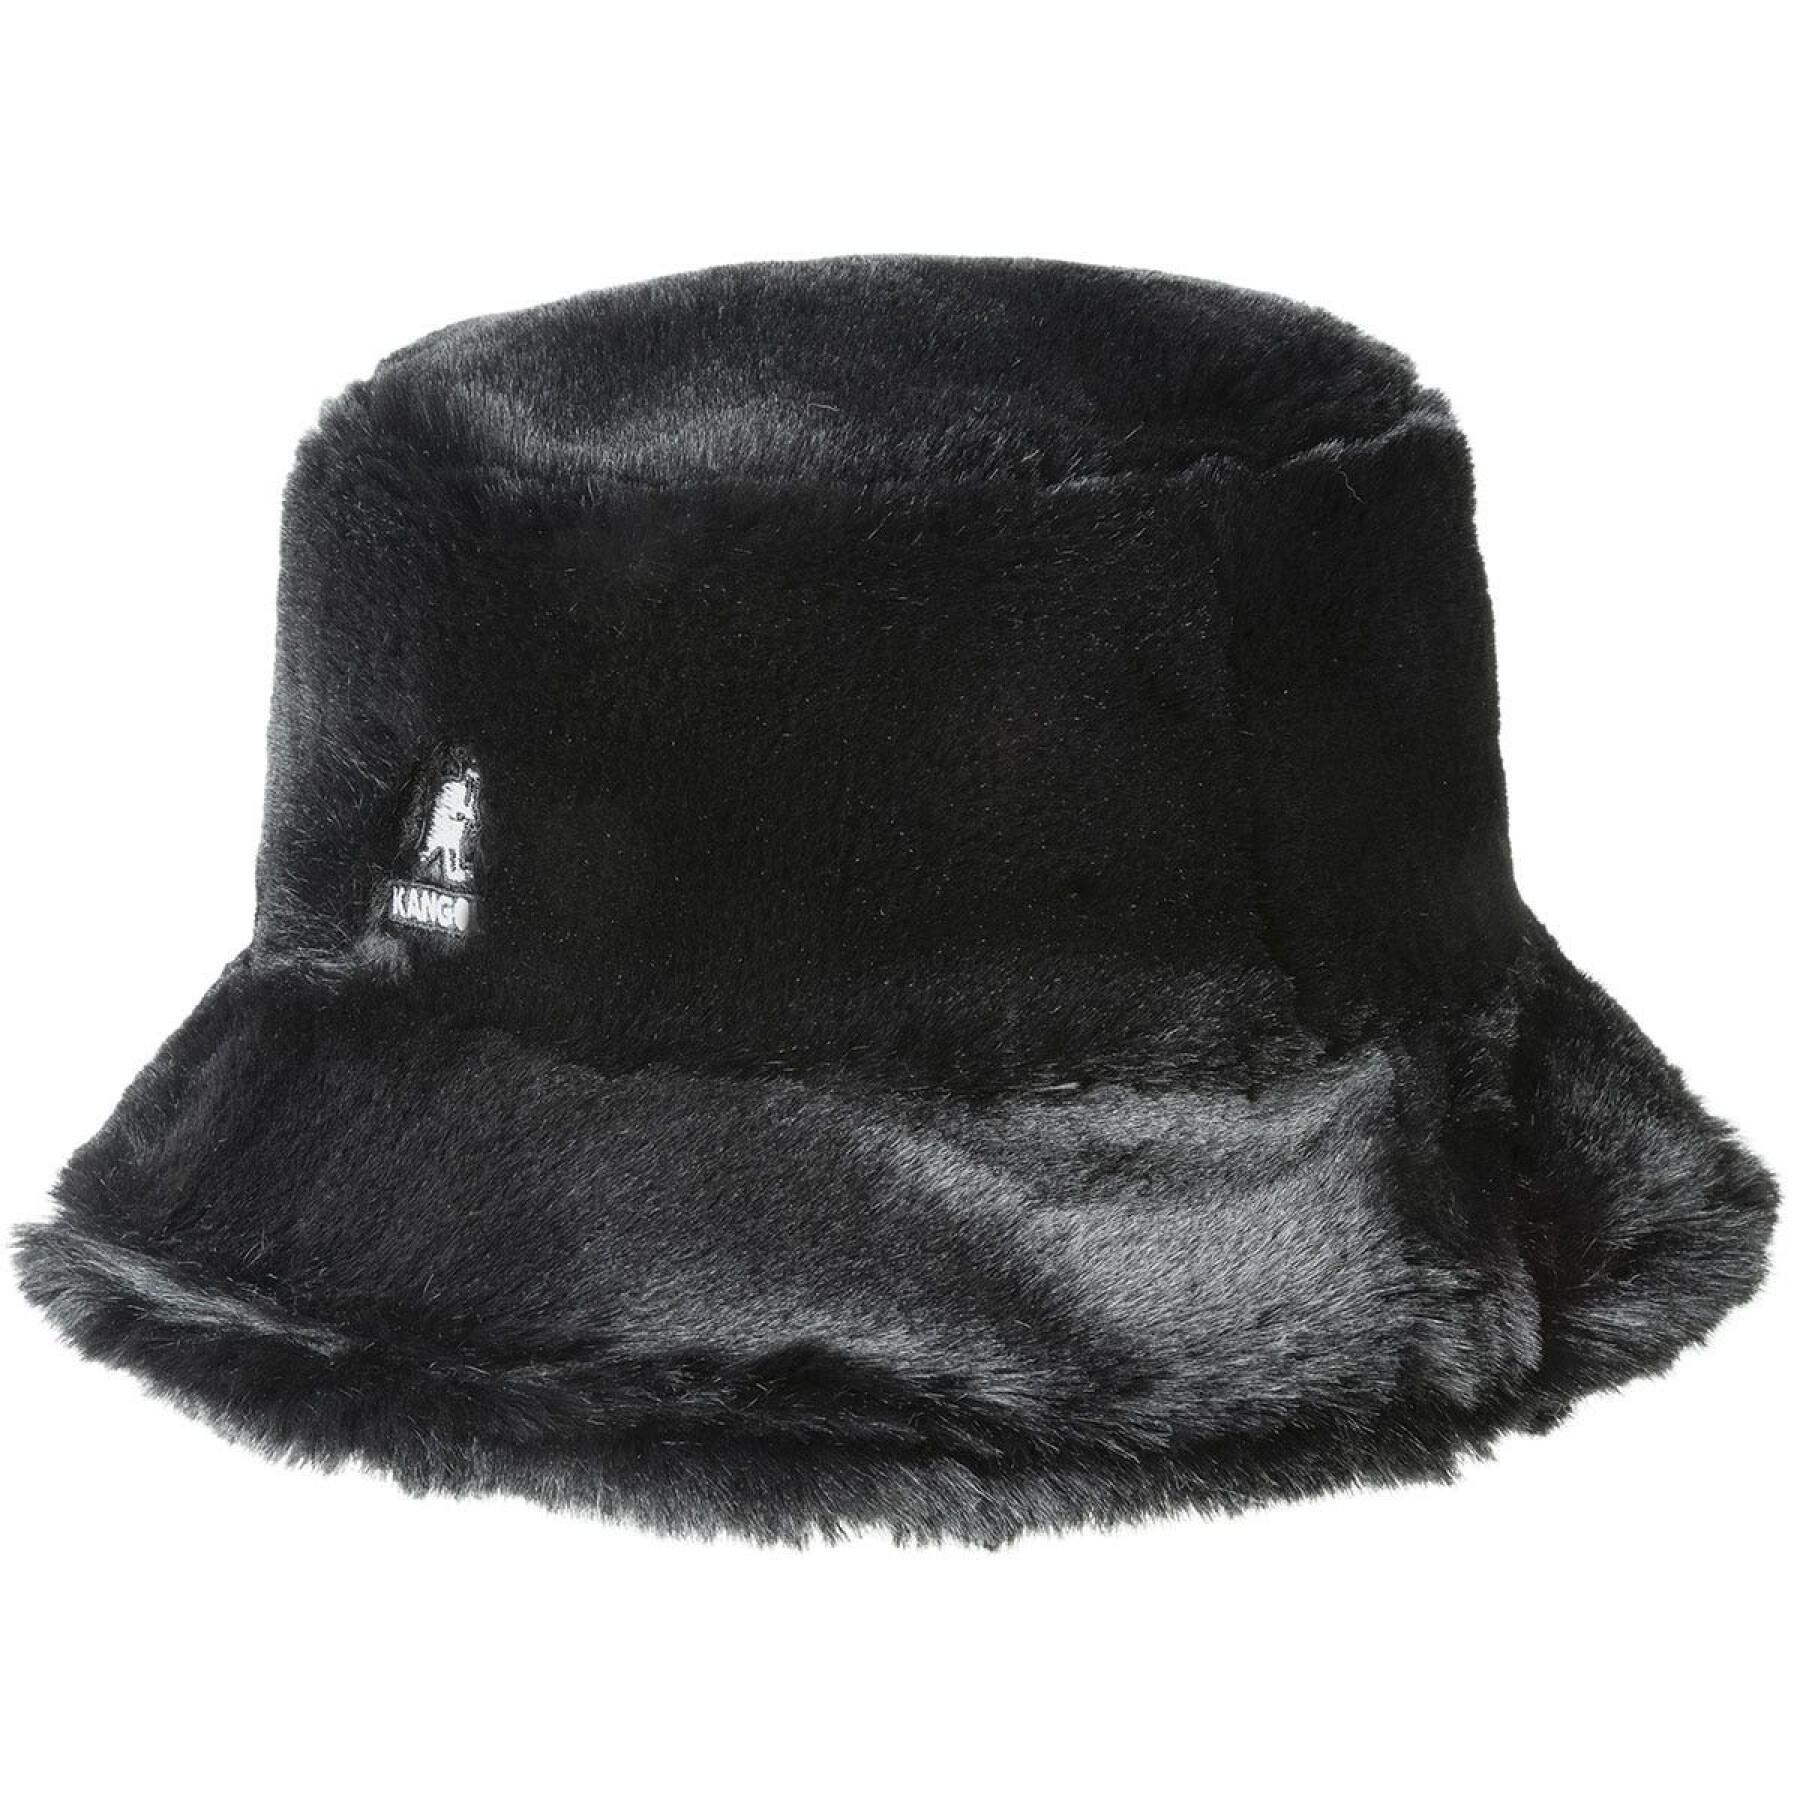 Kangol women's faux fur bucket hat